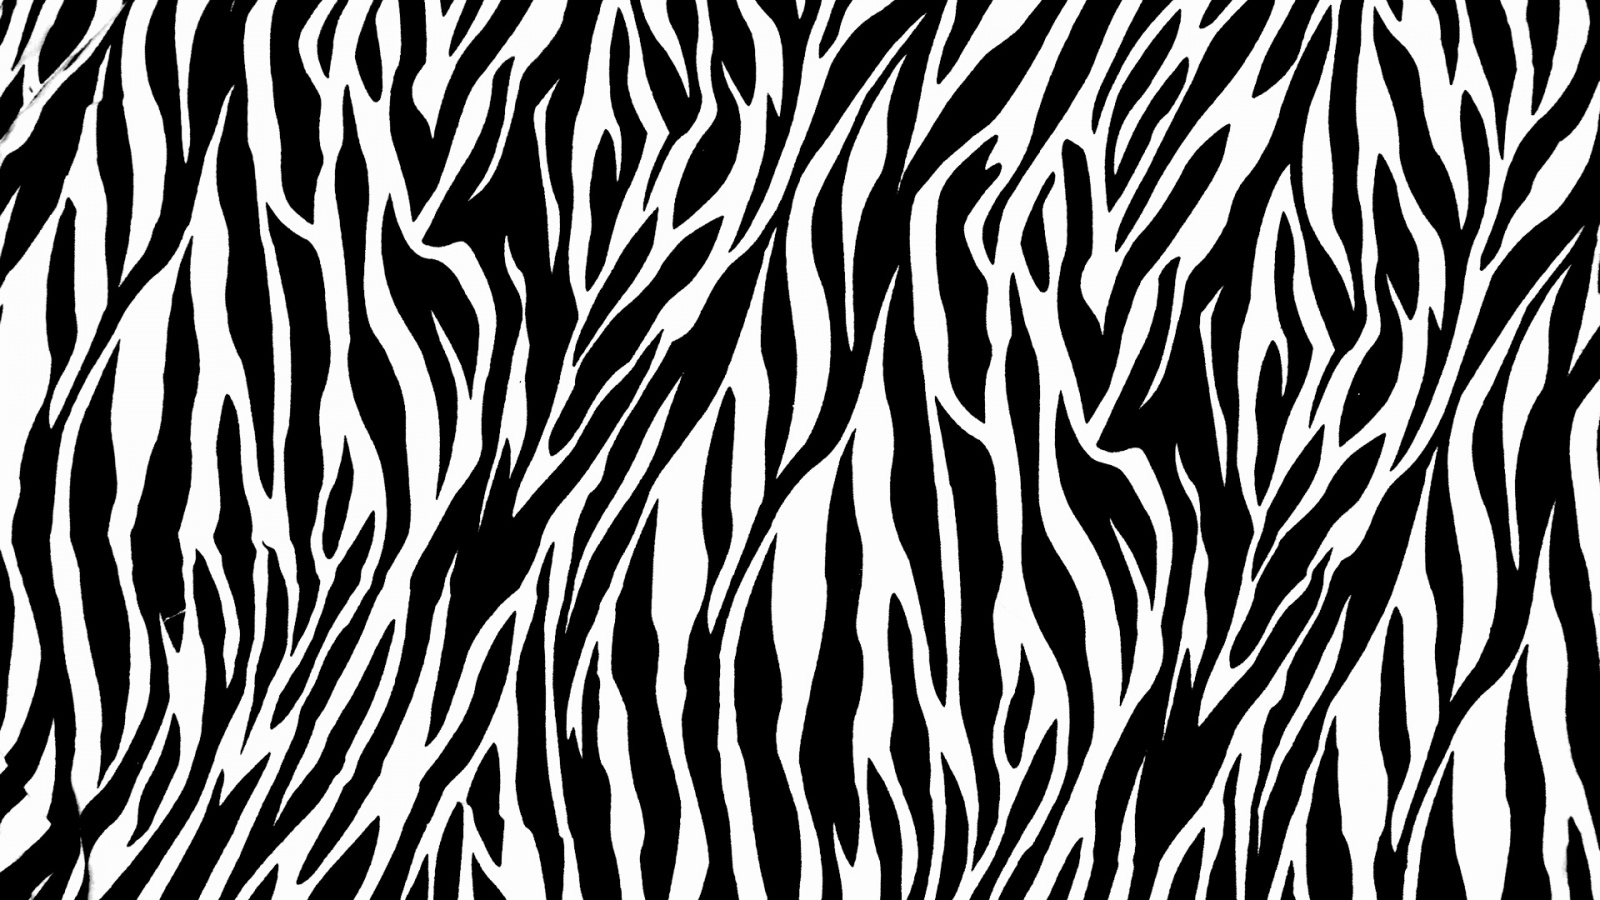 Zebra Print Pictures